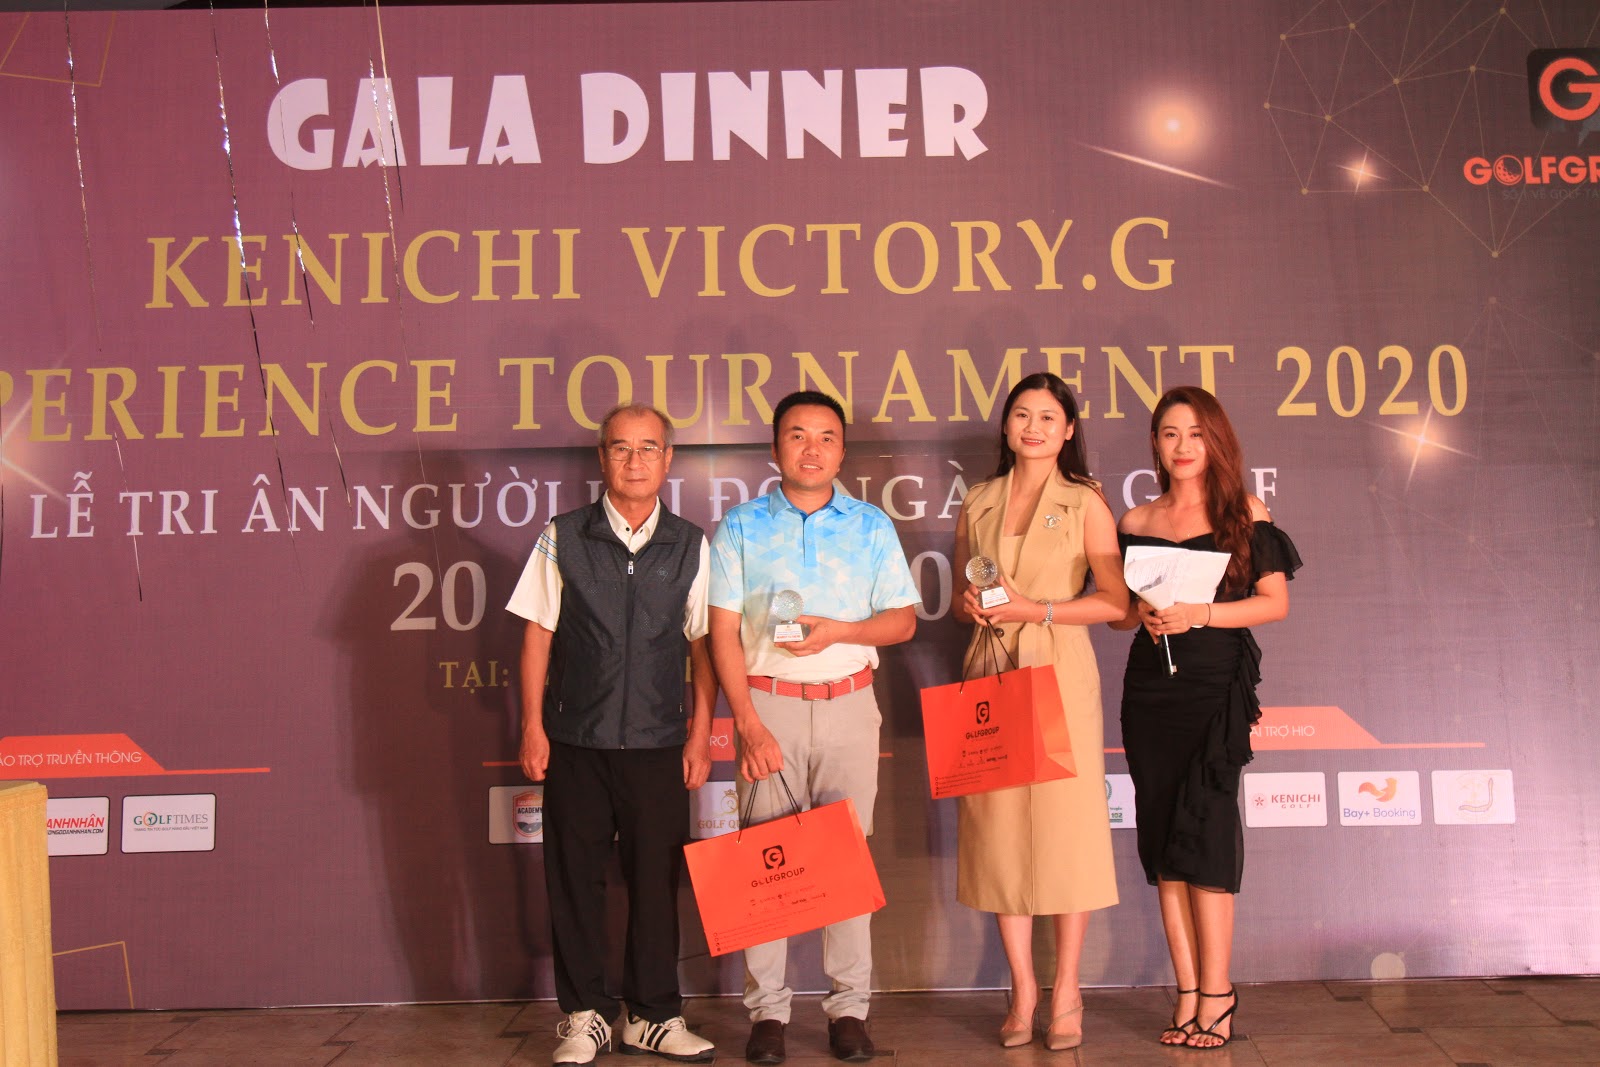 02 Nearest to Pin tại các lỗ: #8,#13: Thuộc về Ms Lam Huyền và anh Đinh Văn Thanh bao gồm: Cup + 1 túi cầm tay GolfGroup